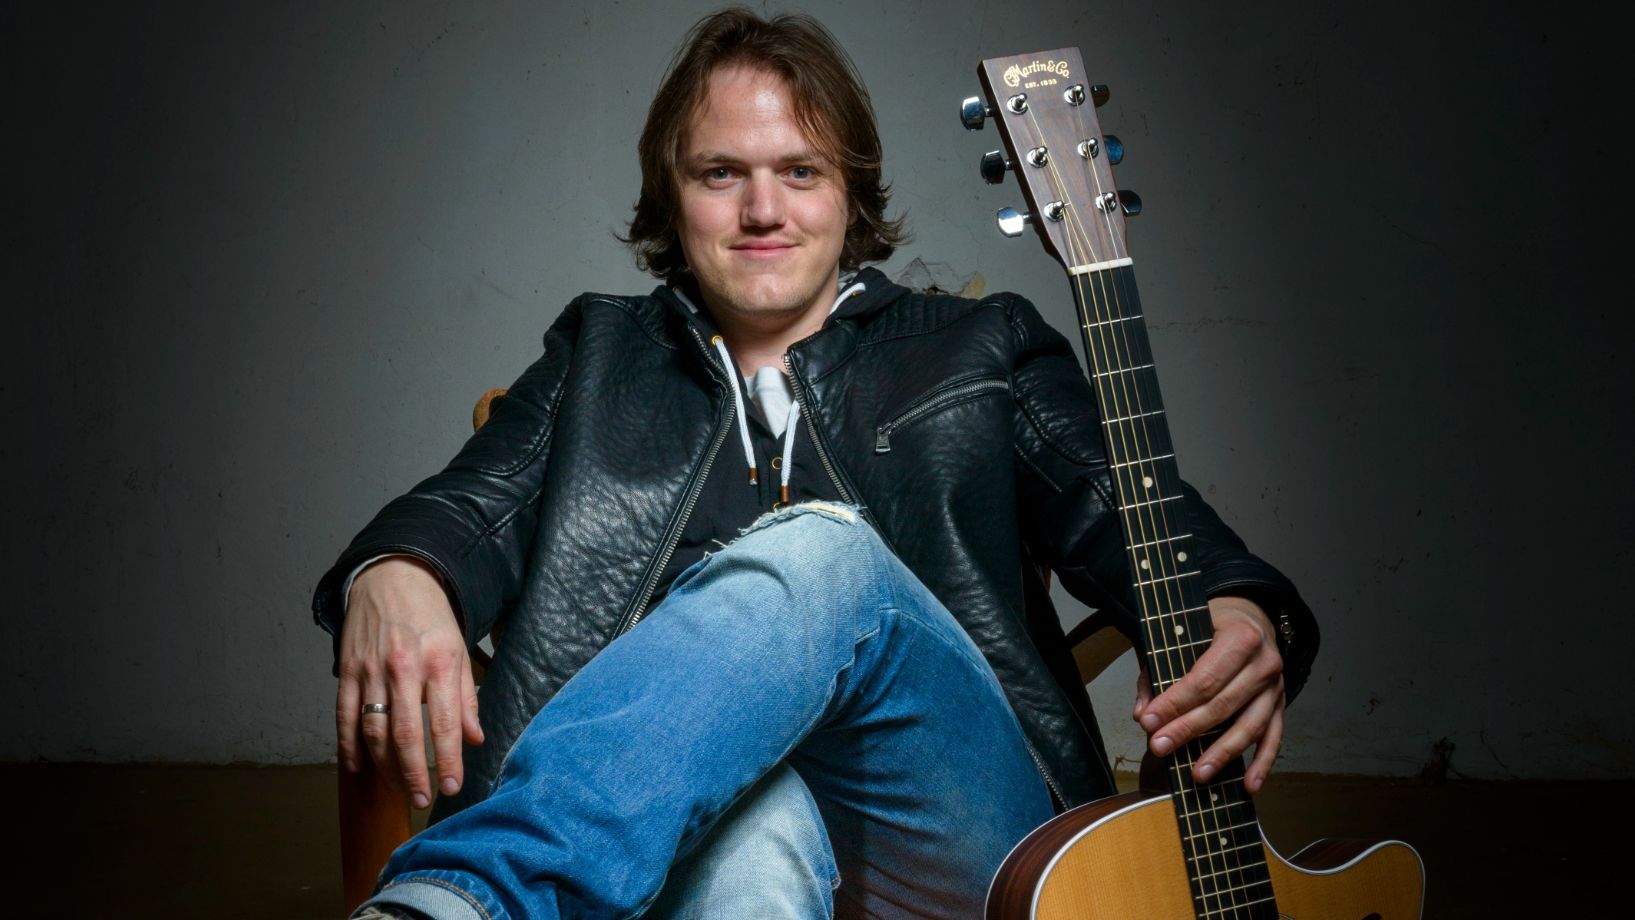 Markus Wutte ist ein österreichischer Singer-Songwriter und Gitarrist, Produzent und Sprecher.